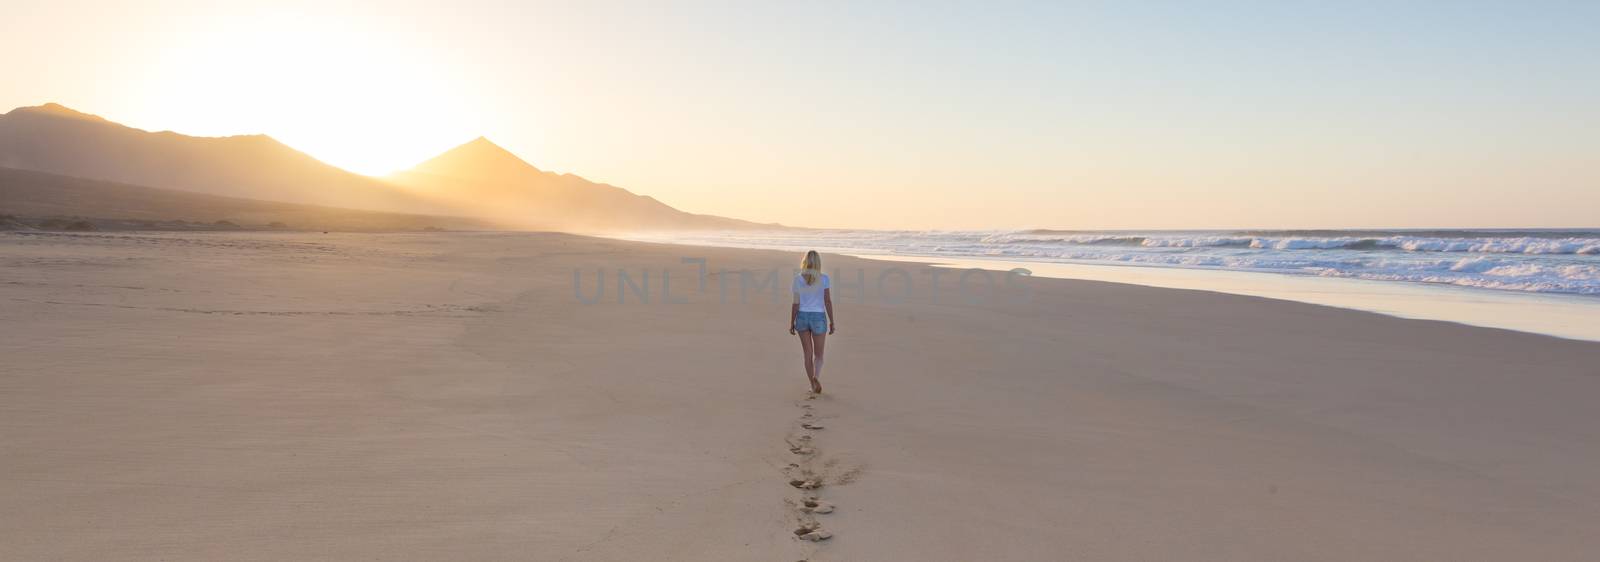 Lady walking on sandy beach in sunset leaving footprints behind. by kasto